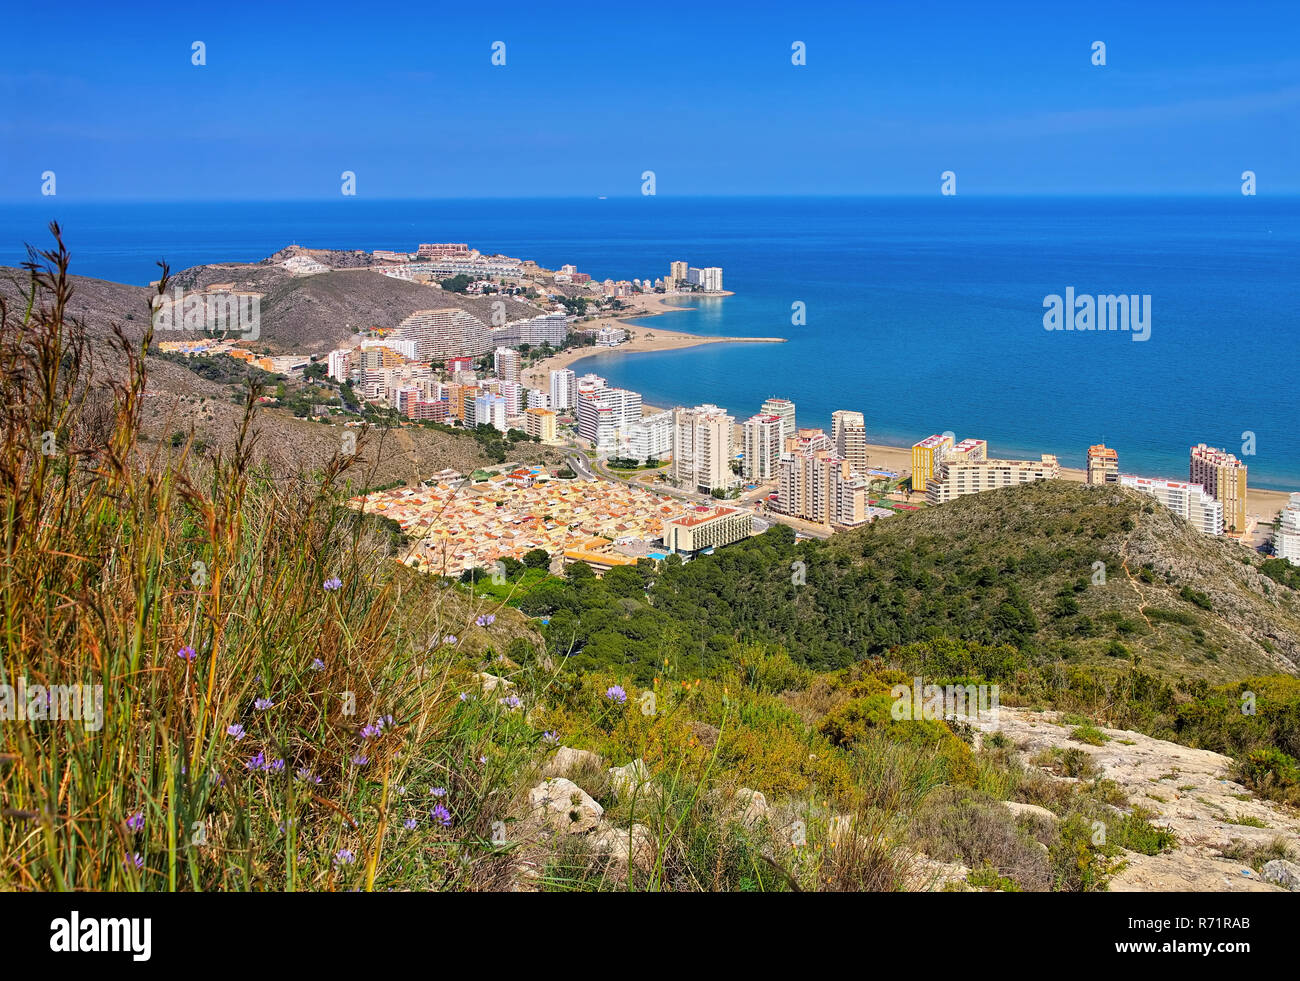 Spiagge nei dintorni di Cullera, provincia di Valencia in Spagna Foto stock  - Alamy